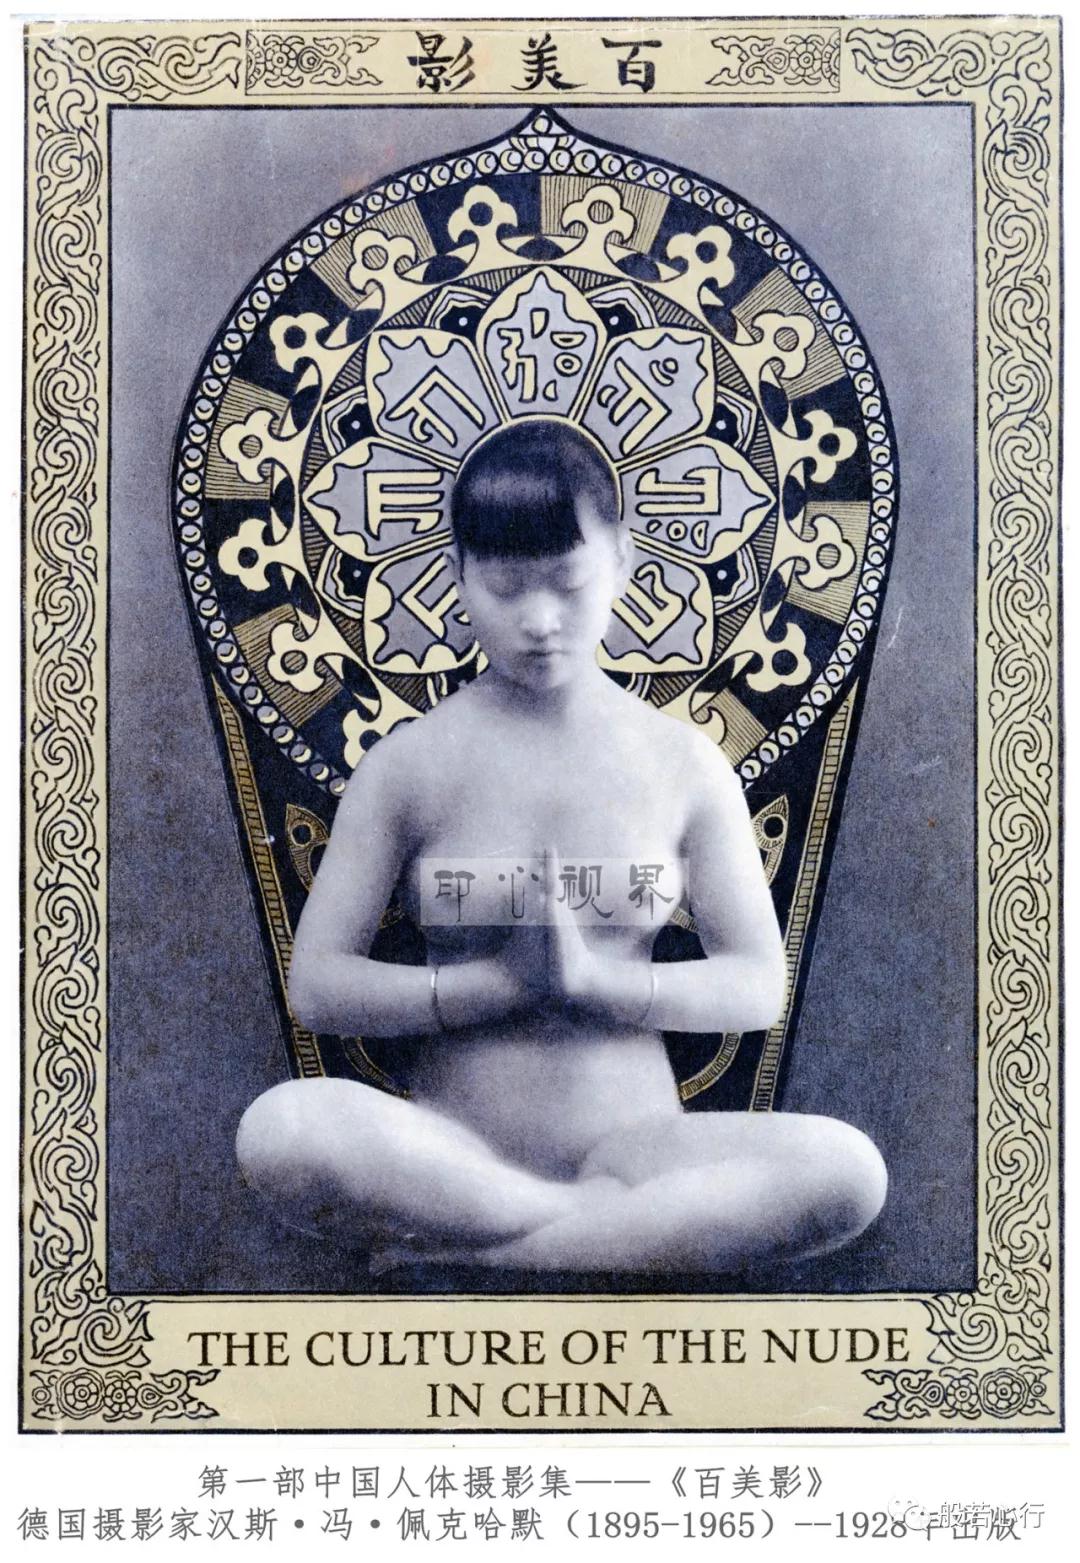 中国女性的形体美原来是被德国的摄影师 最早公诸于世